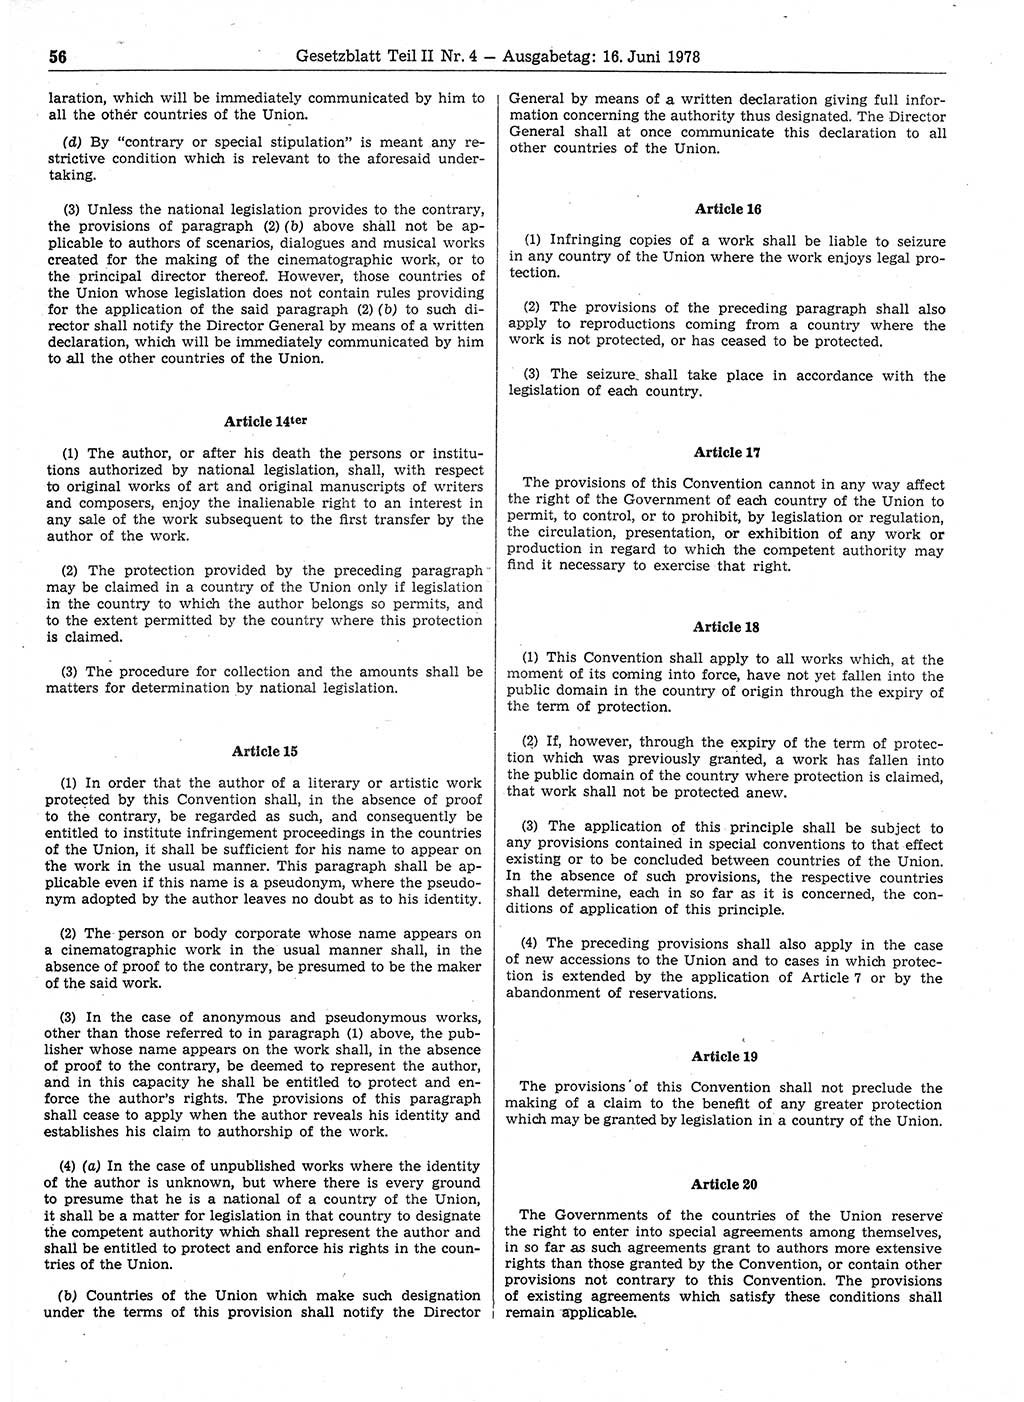 Gesetzblatt (GBl.) der Deutschen Demokratischen Republik (DDR) Teil ⅠⅠ 1978, Seite 56 (GBl. DDR ⅠⅠ 1978, S. 56)